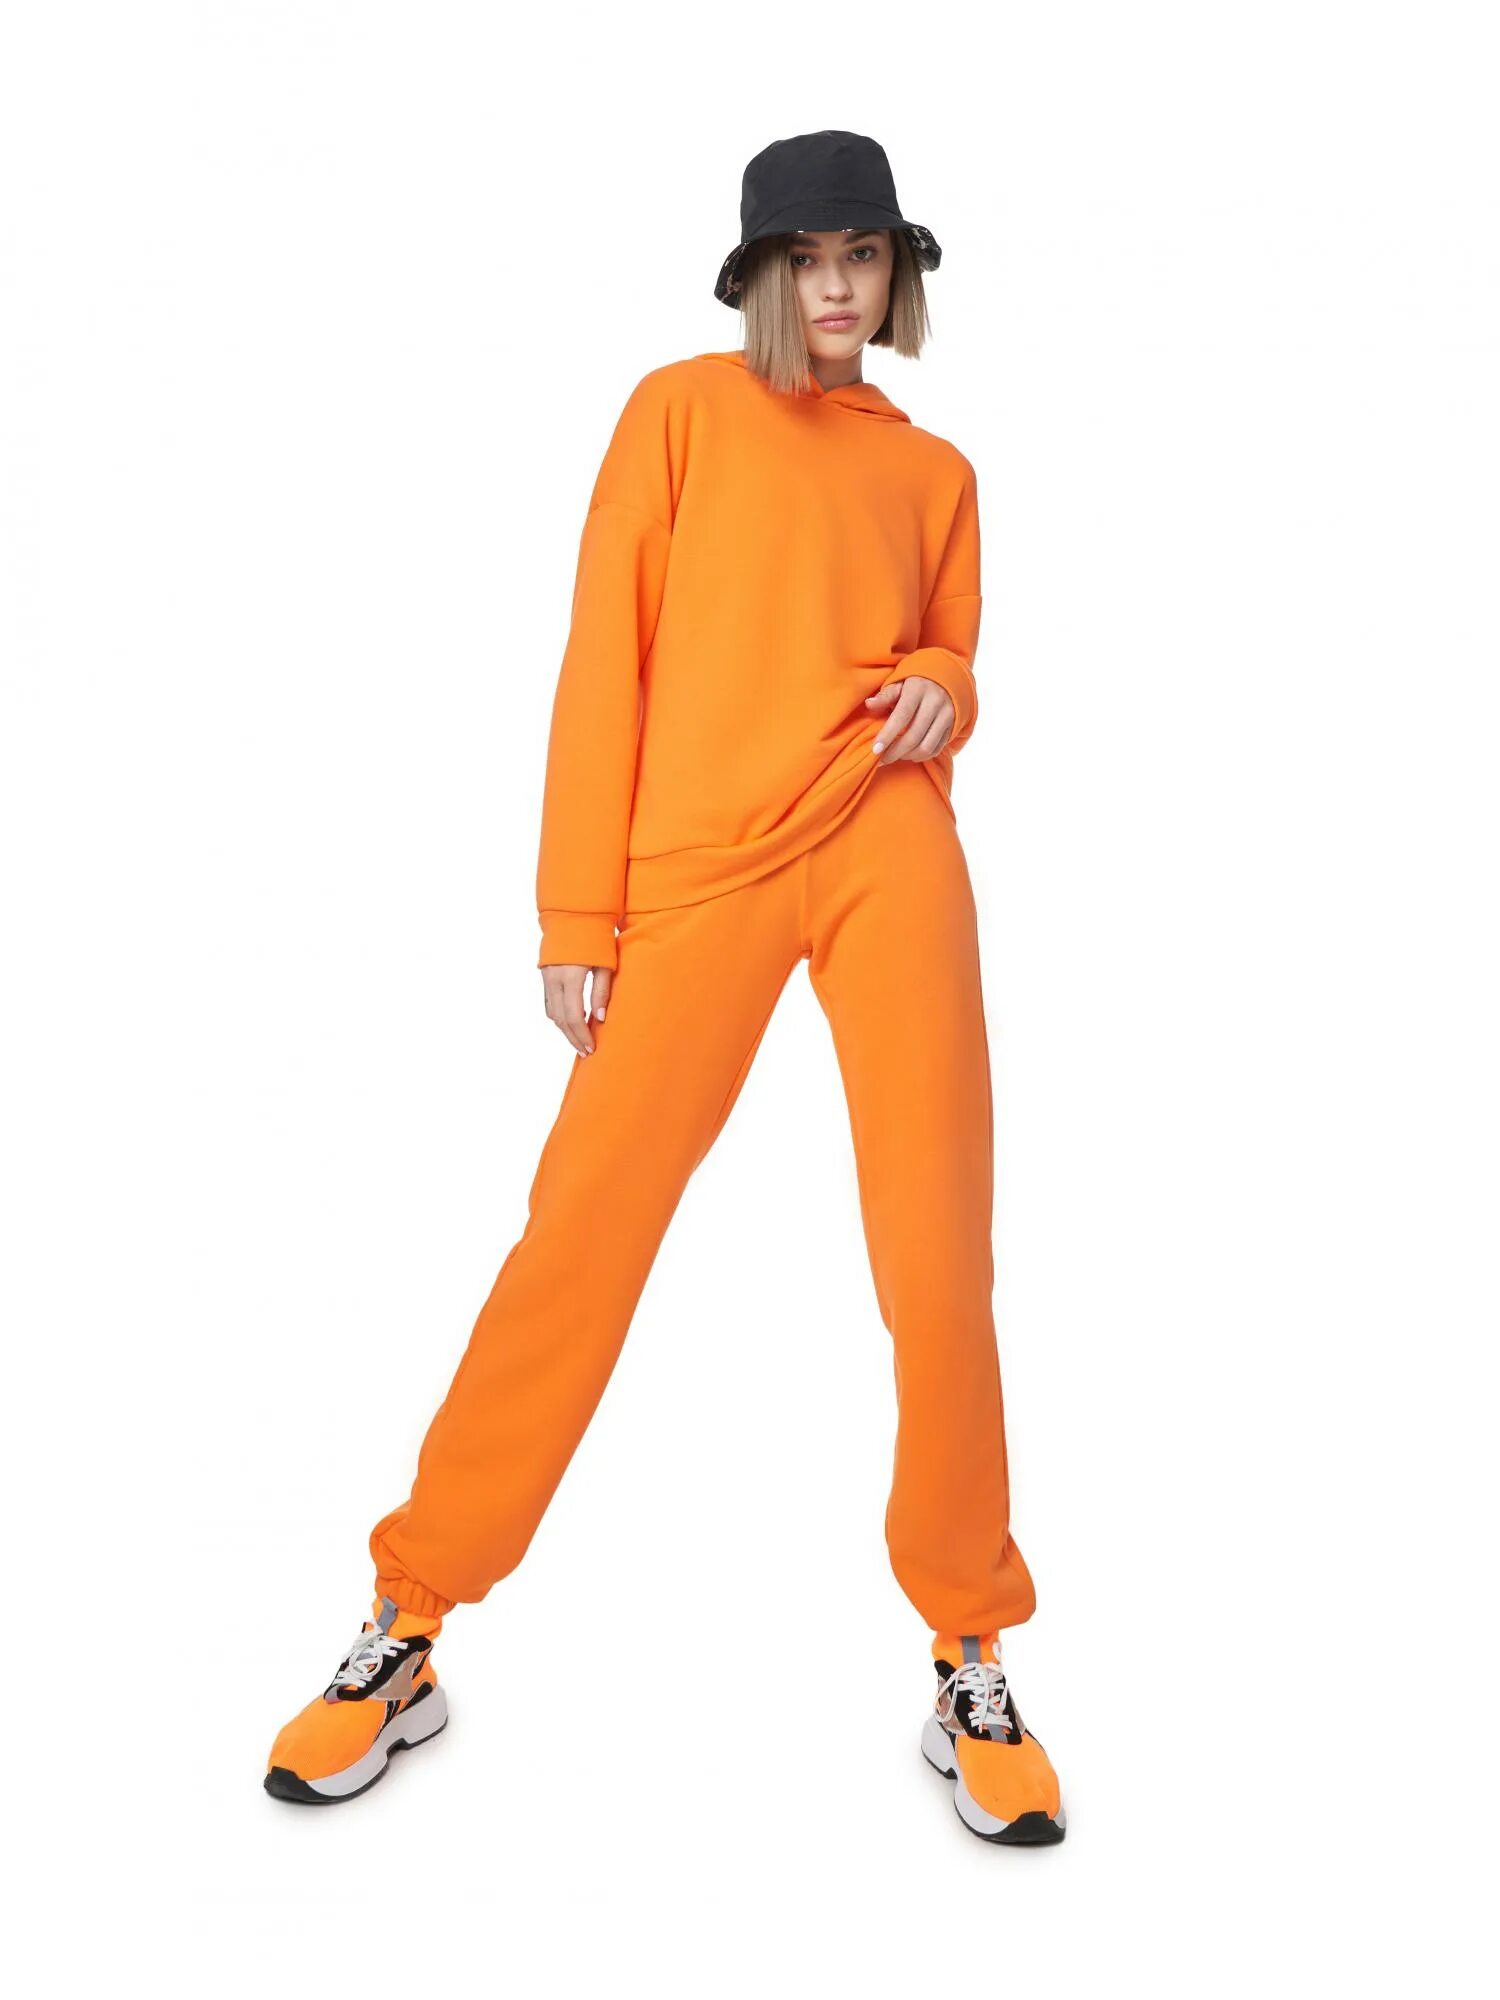 Оранжевый спортивный костюм. Оранжевый костюм женский. Костюмы оранжевого цвета. Спортивный костюм женский оранжевого цвета.